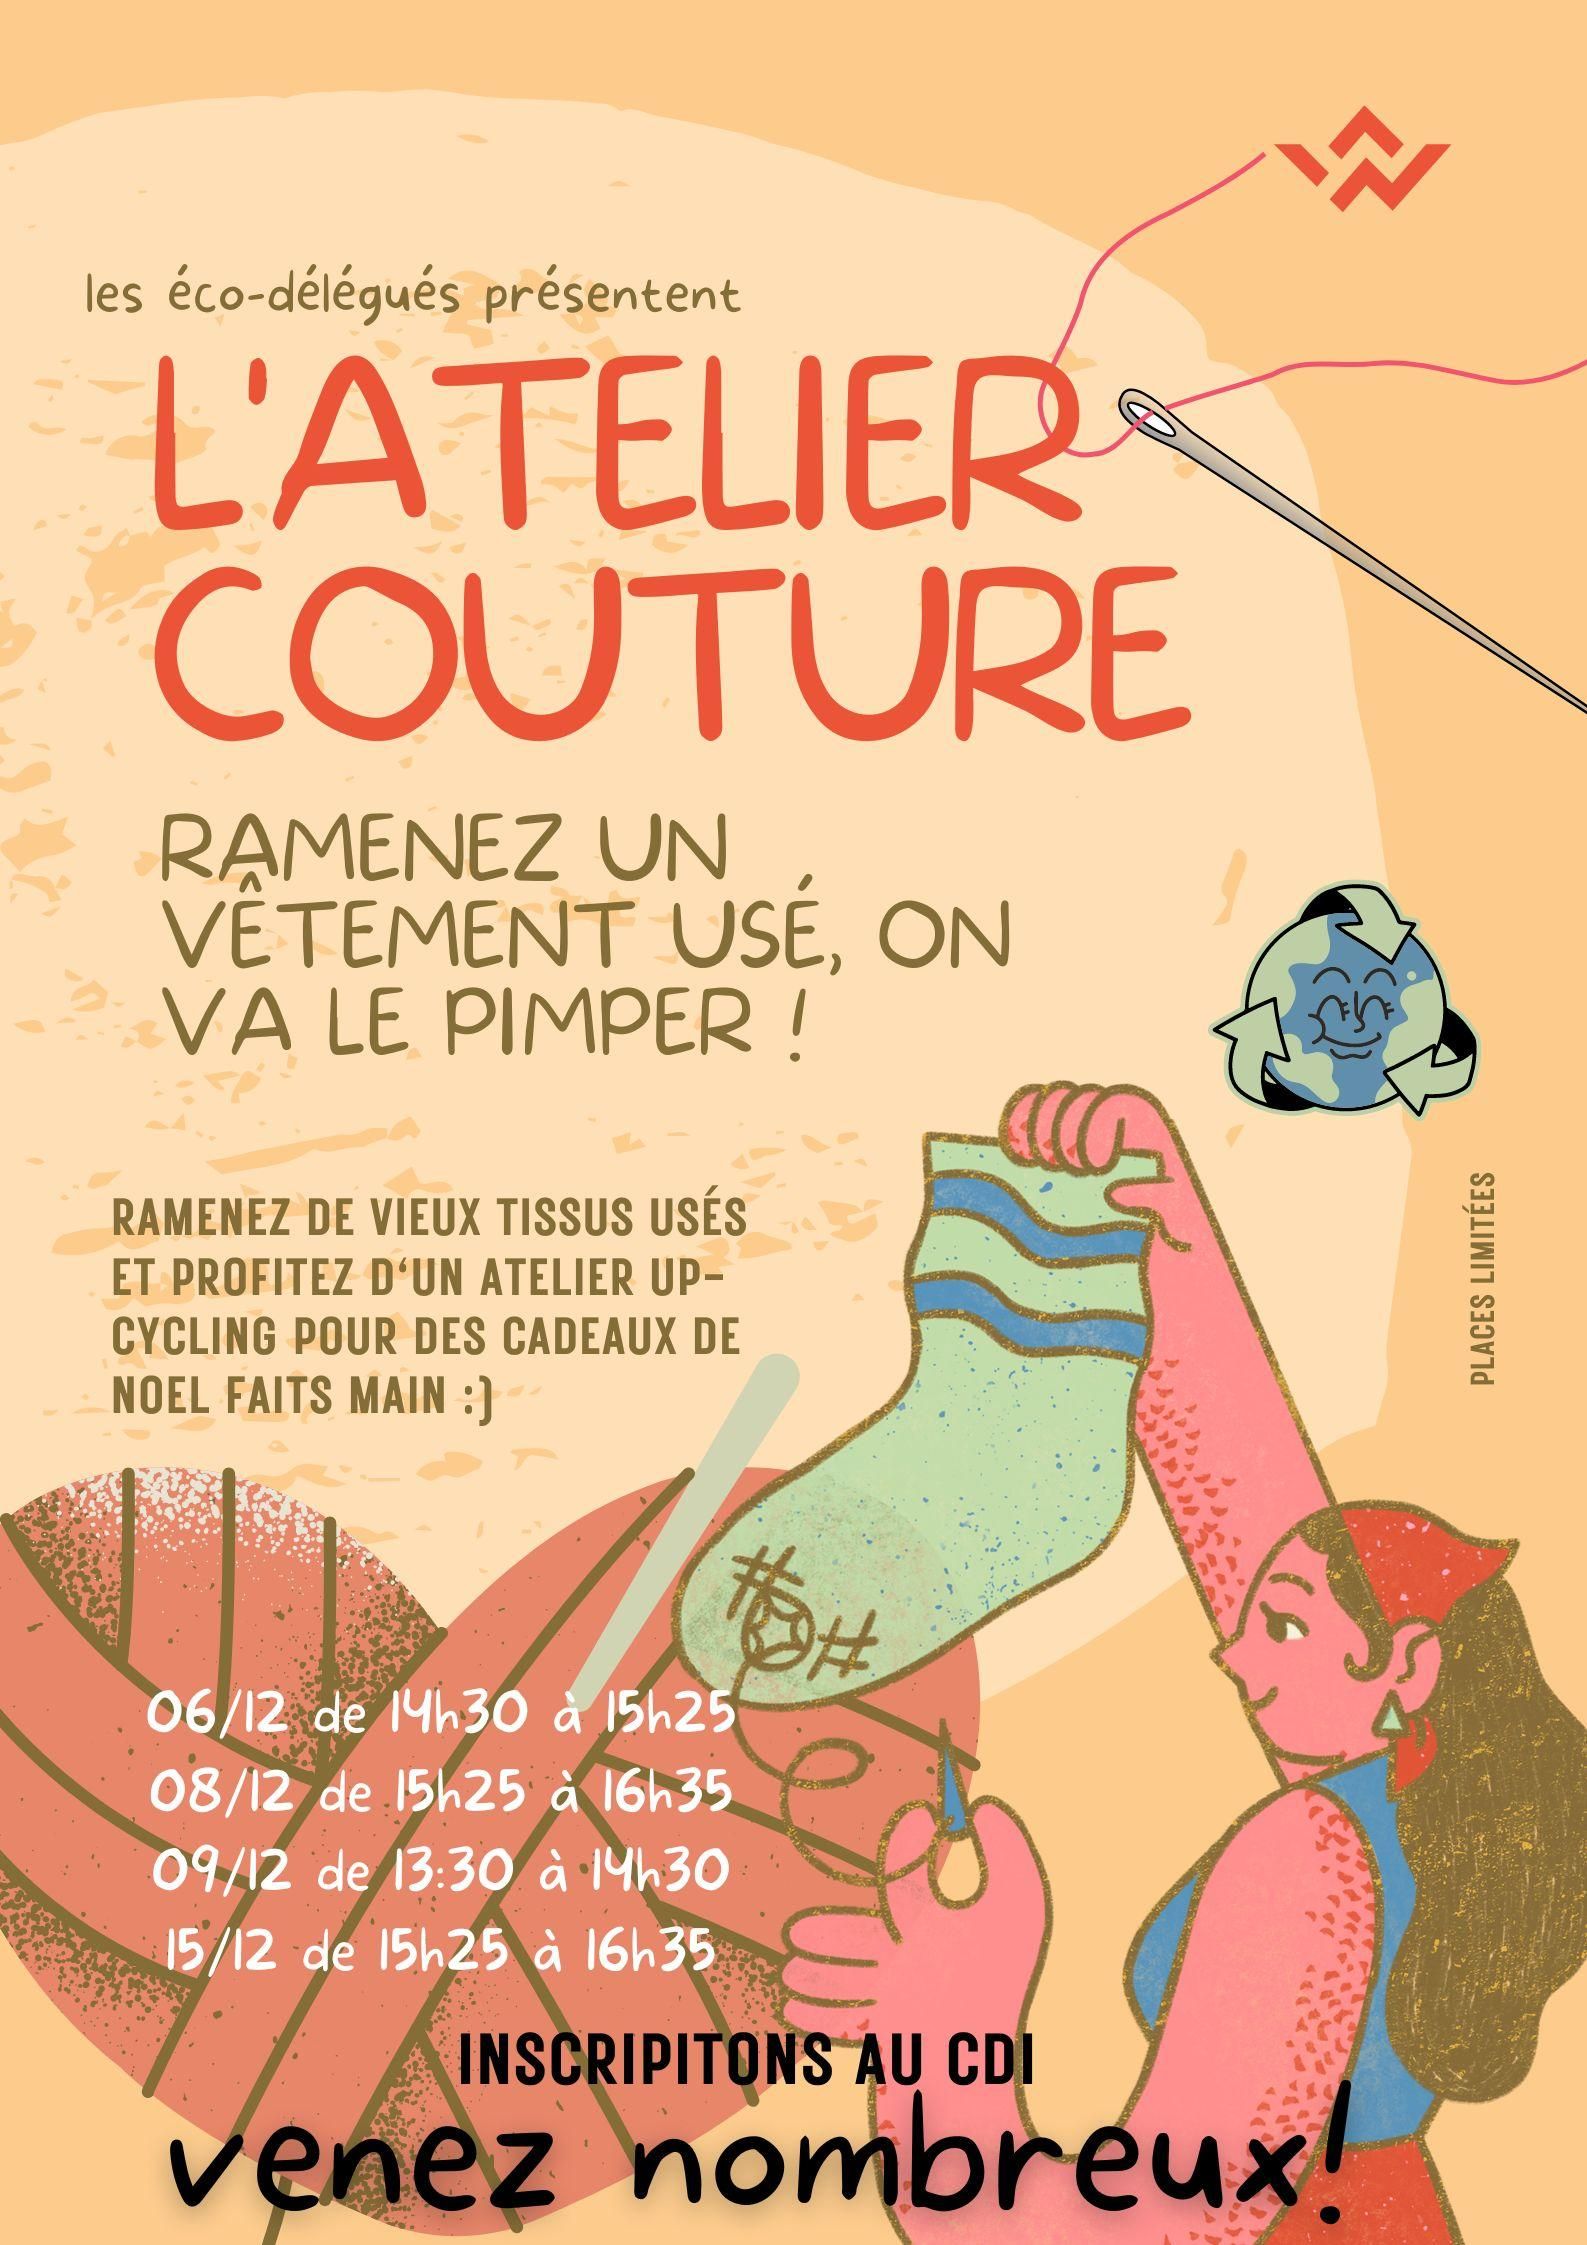 Le LPO Charles de Gaulle vous invitent à "pimper" vos vieux vêtements !